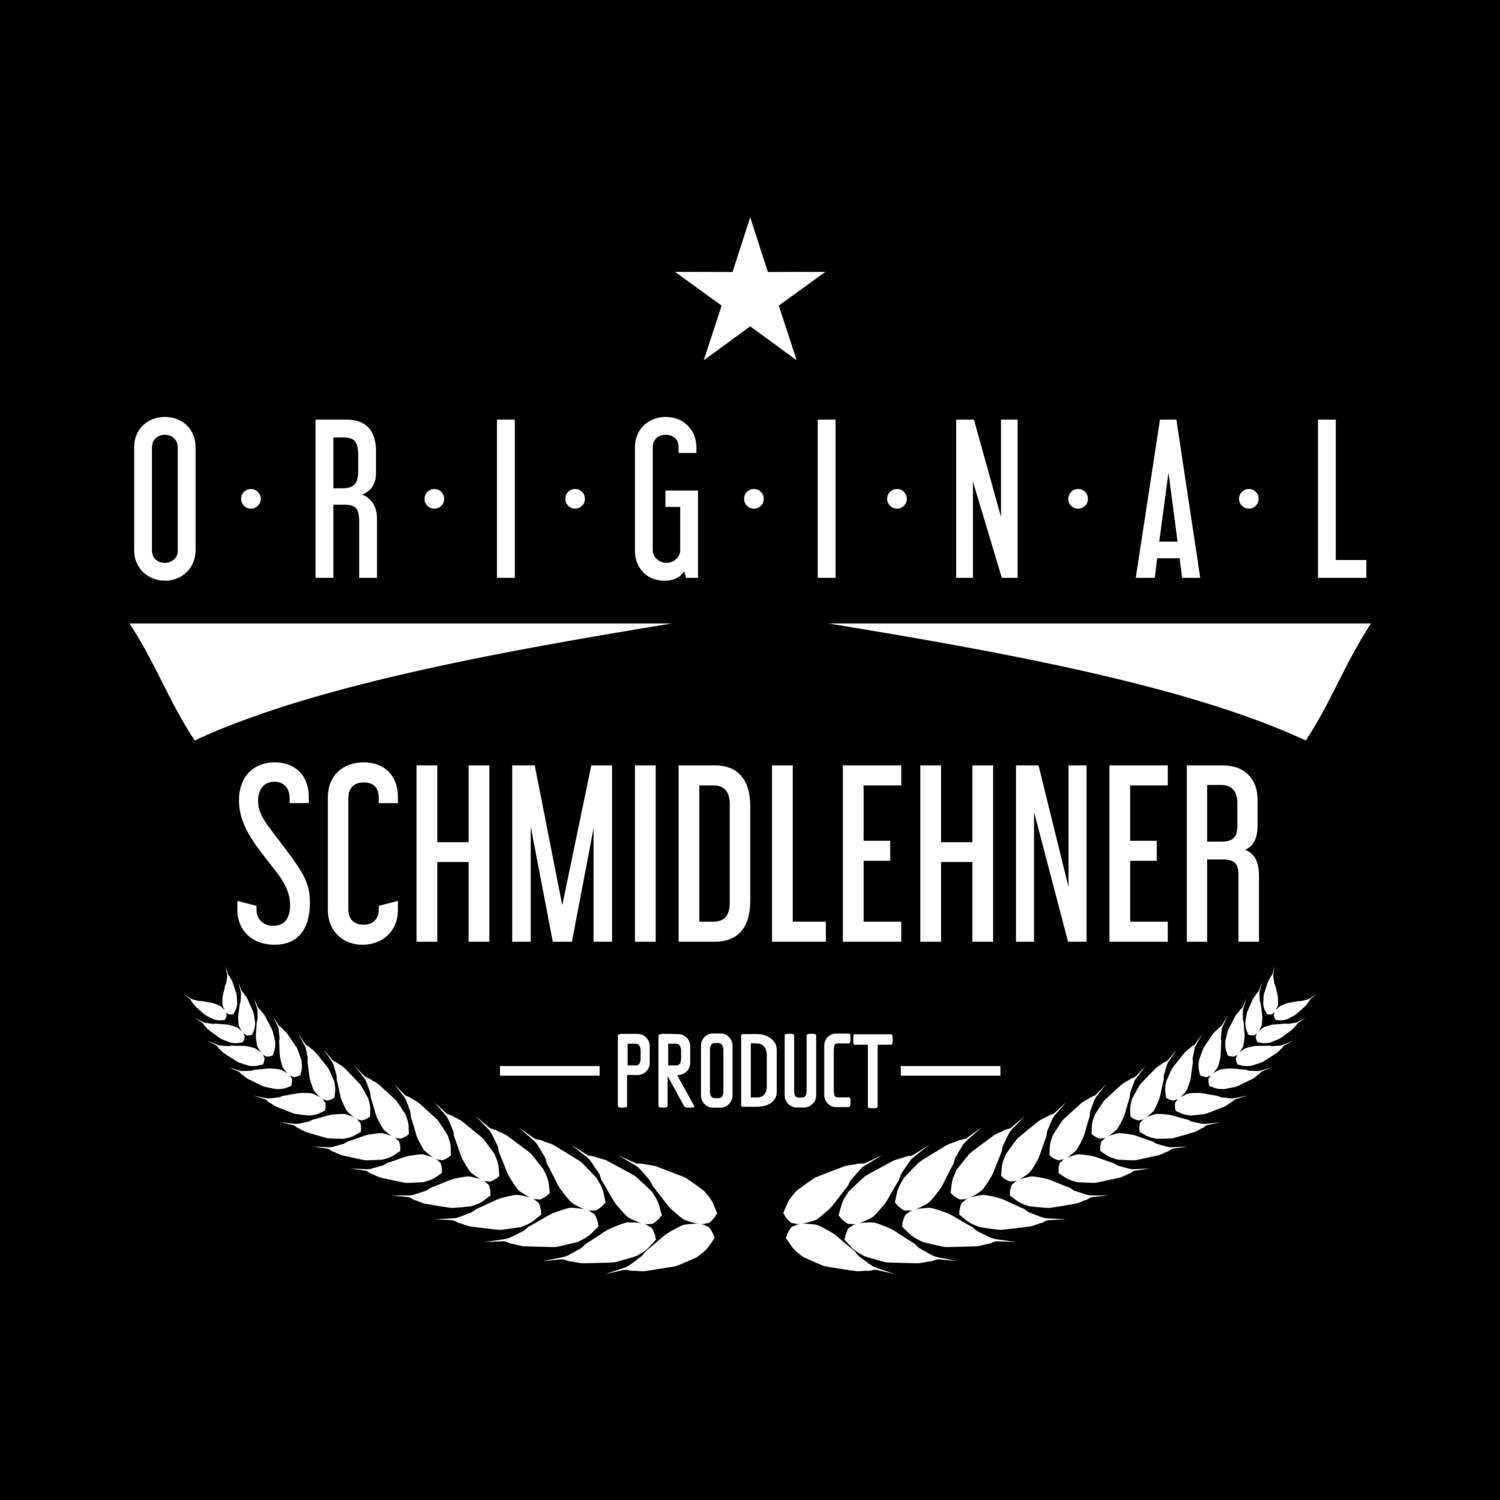 Schmidlehner T-Shirt »Original Product«